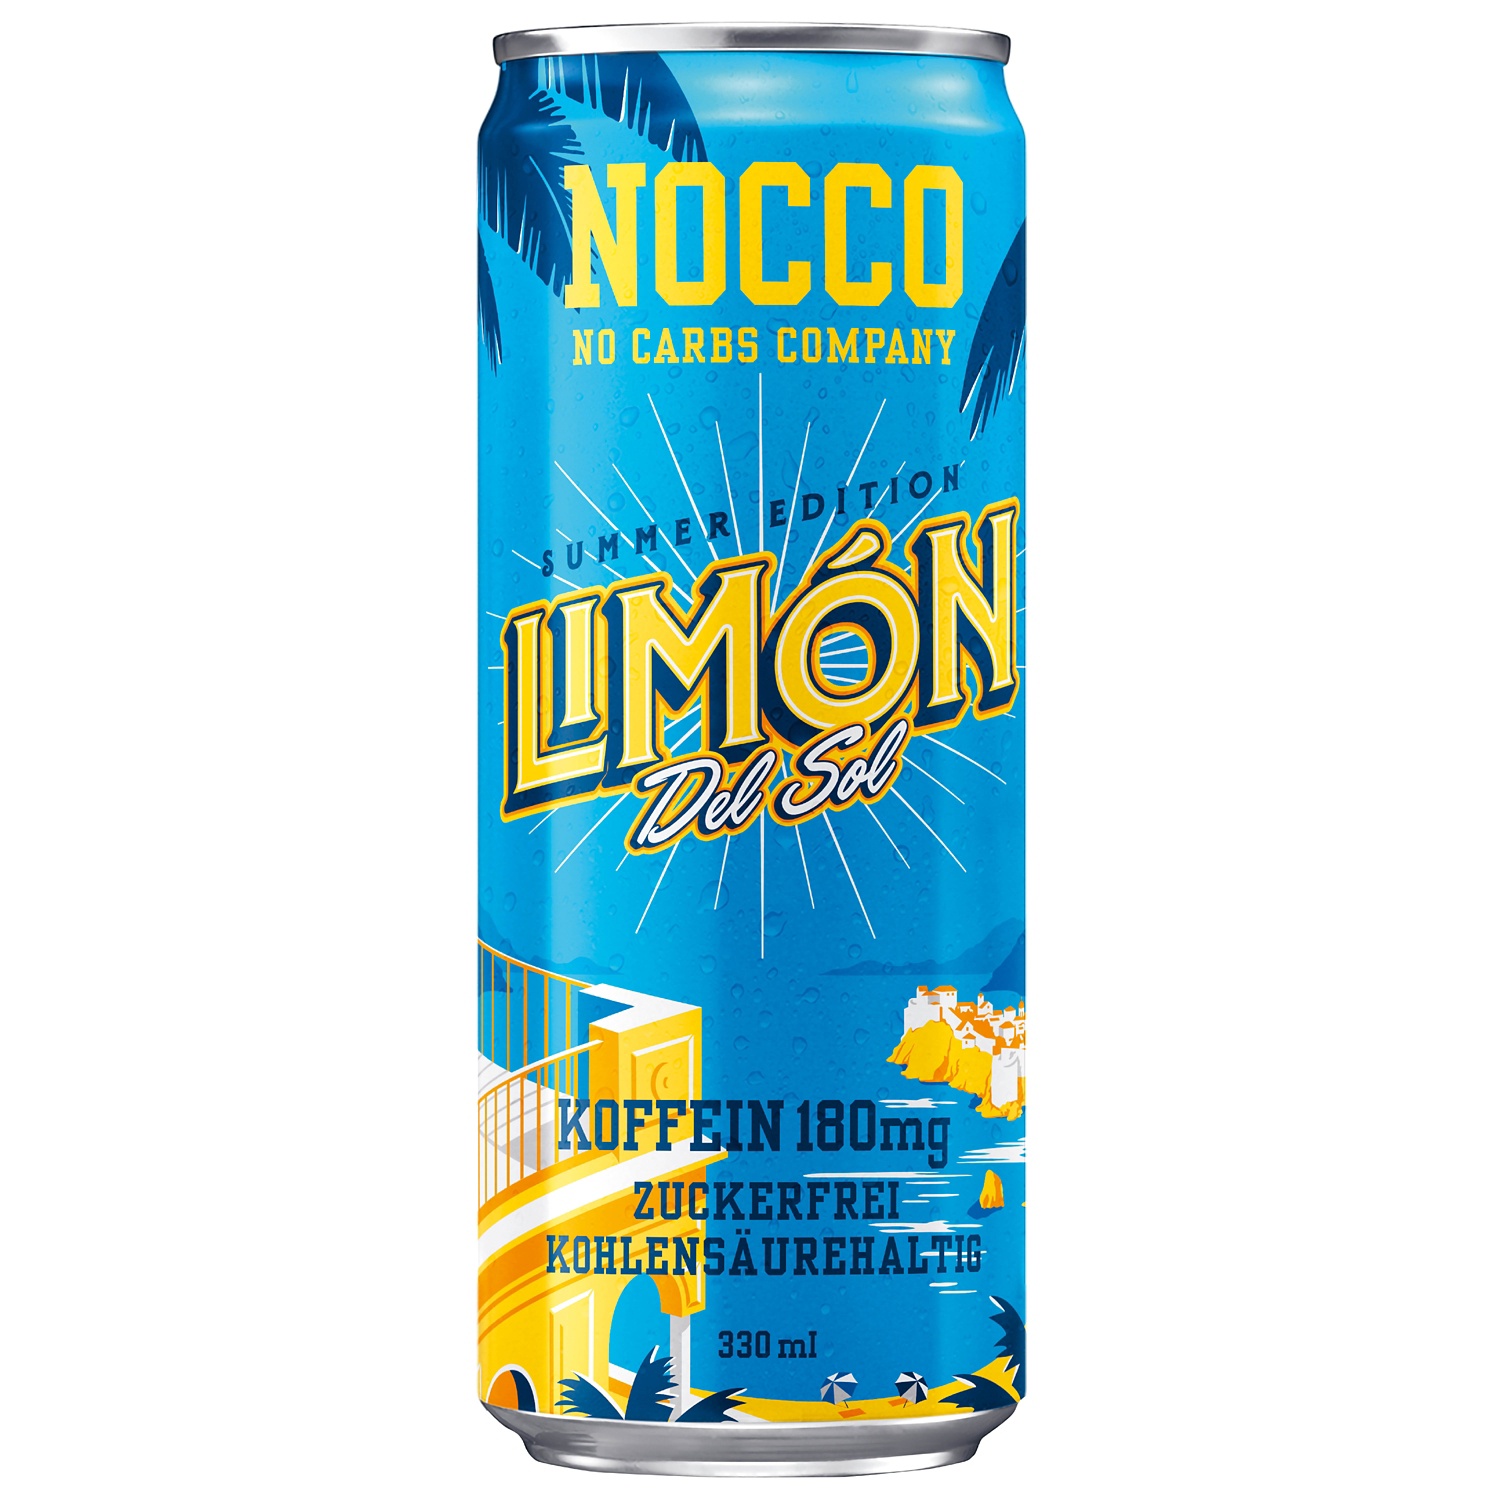 NOCCO NO CARBS COMPANY, Limon Del Sol